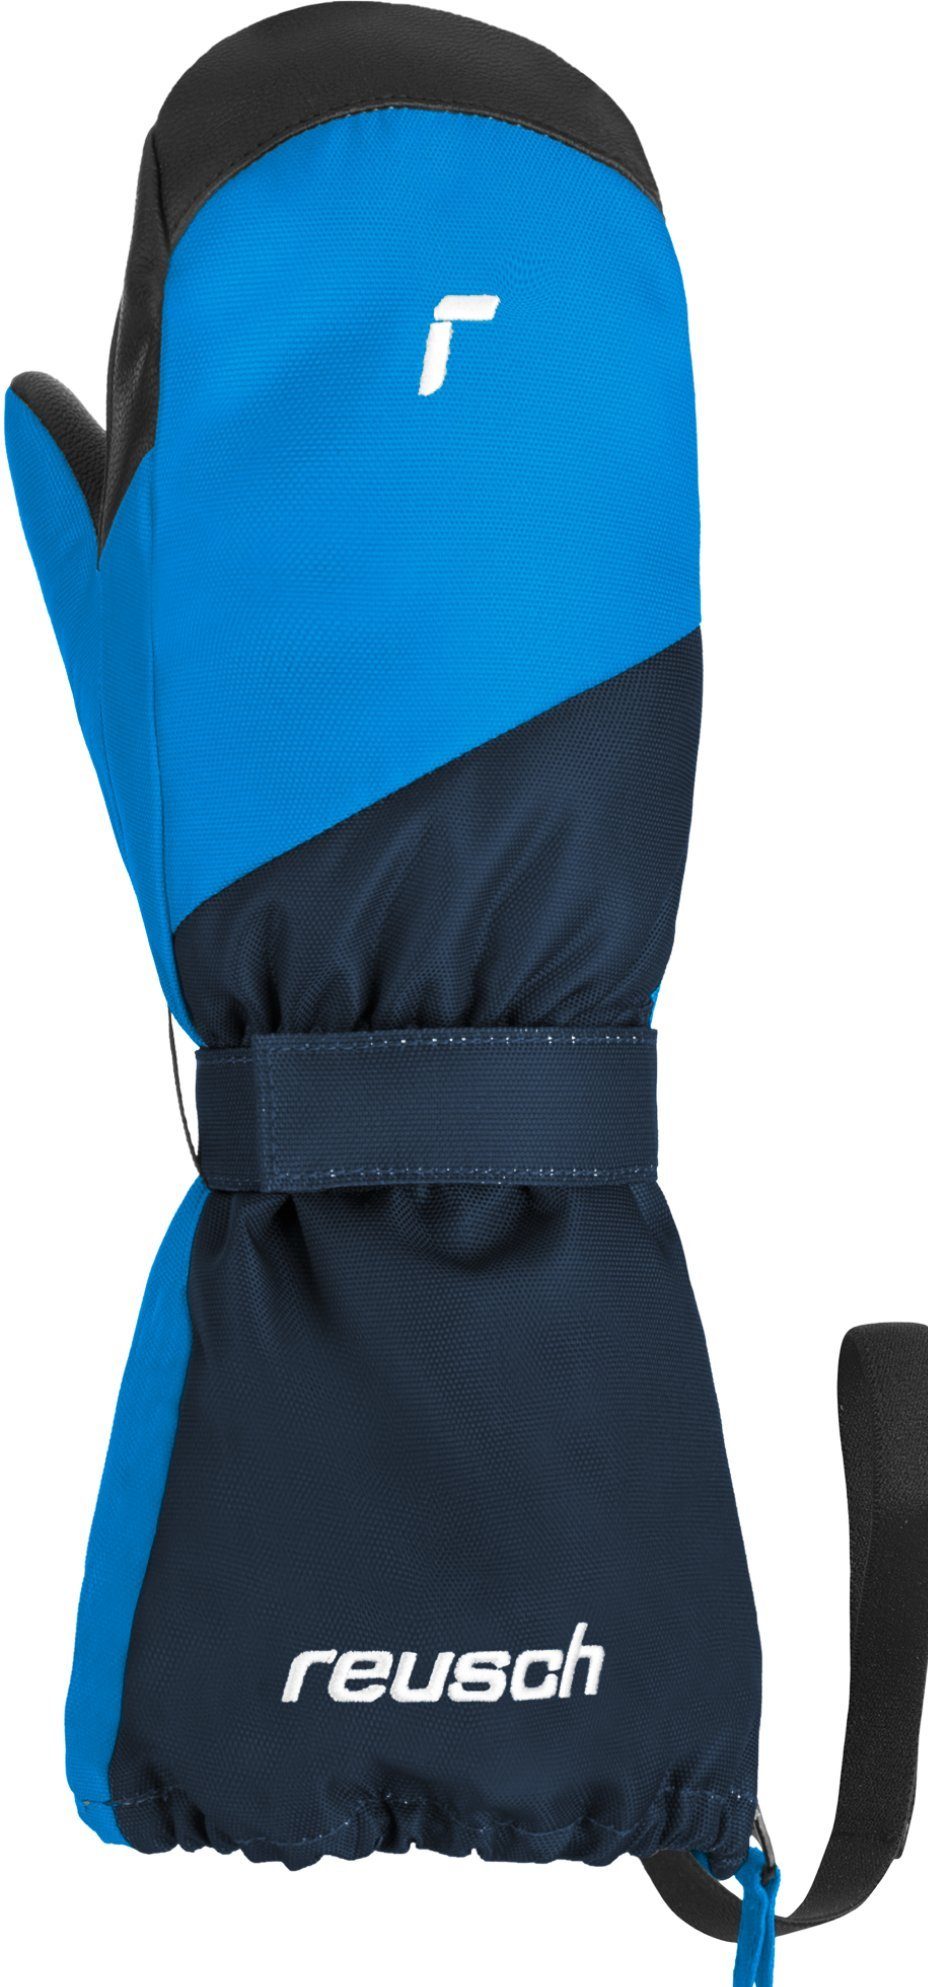 Reusch Snowboardhandschuhe Reusch Lucky Mitten bl blue dress / 4458 brilliant XT R-TEX®